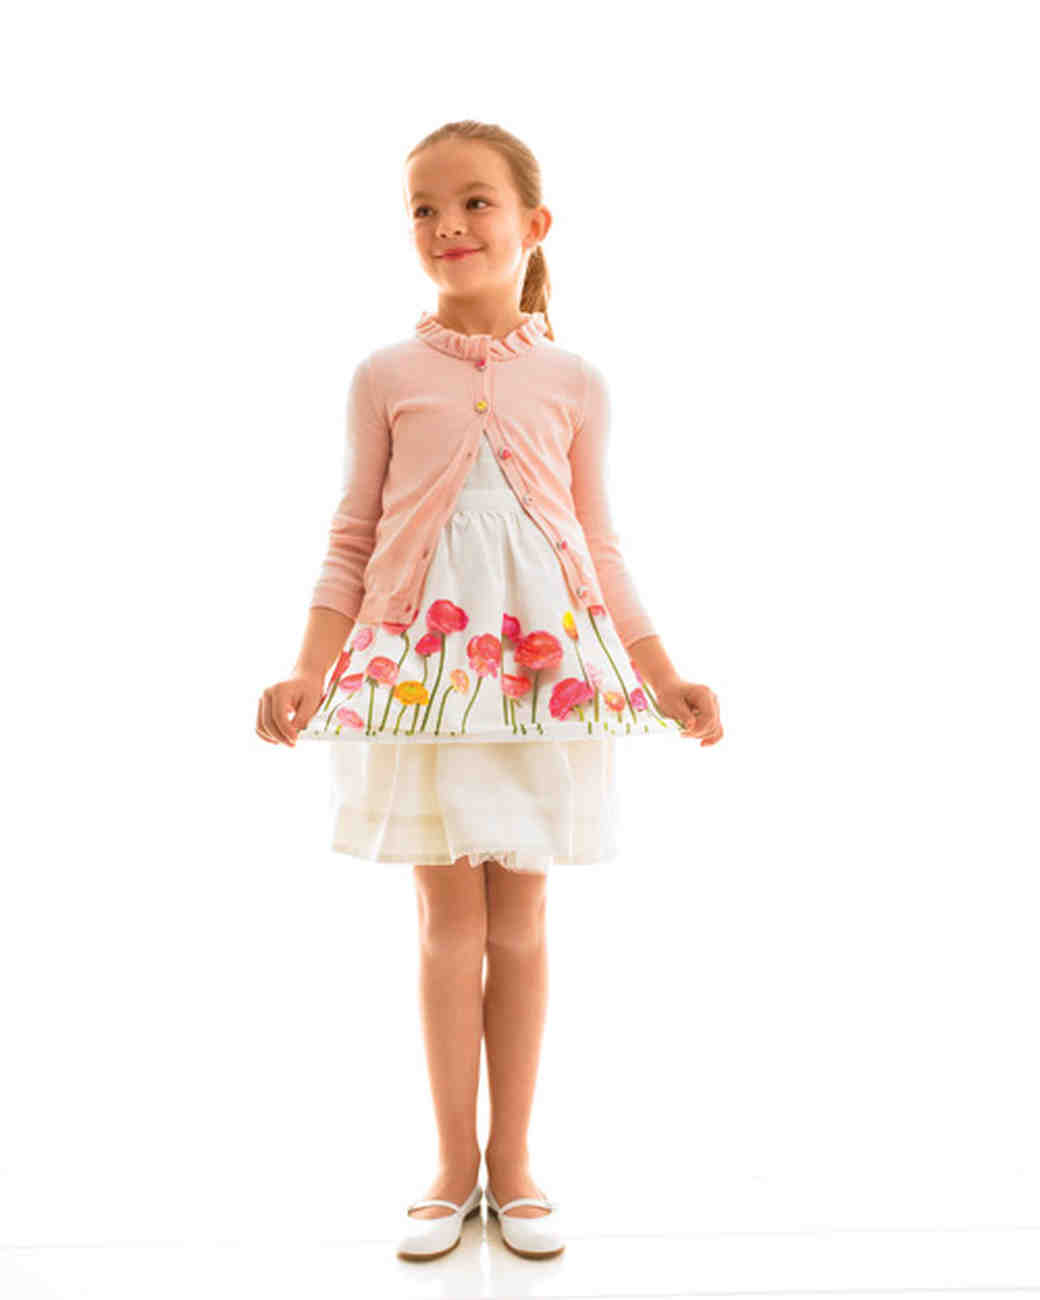 Flower Girl Accessories Little Ones Will Love | Martha Stewart Weddings